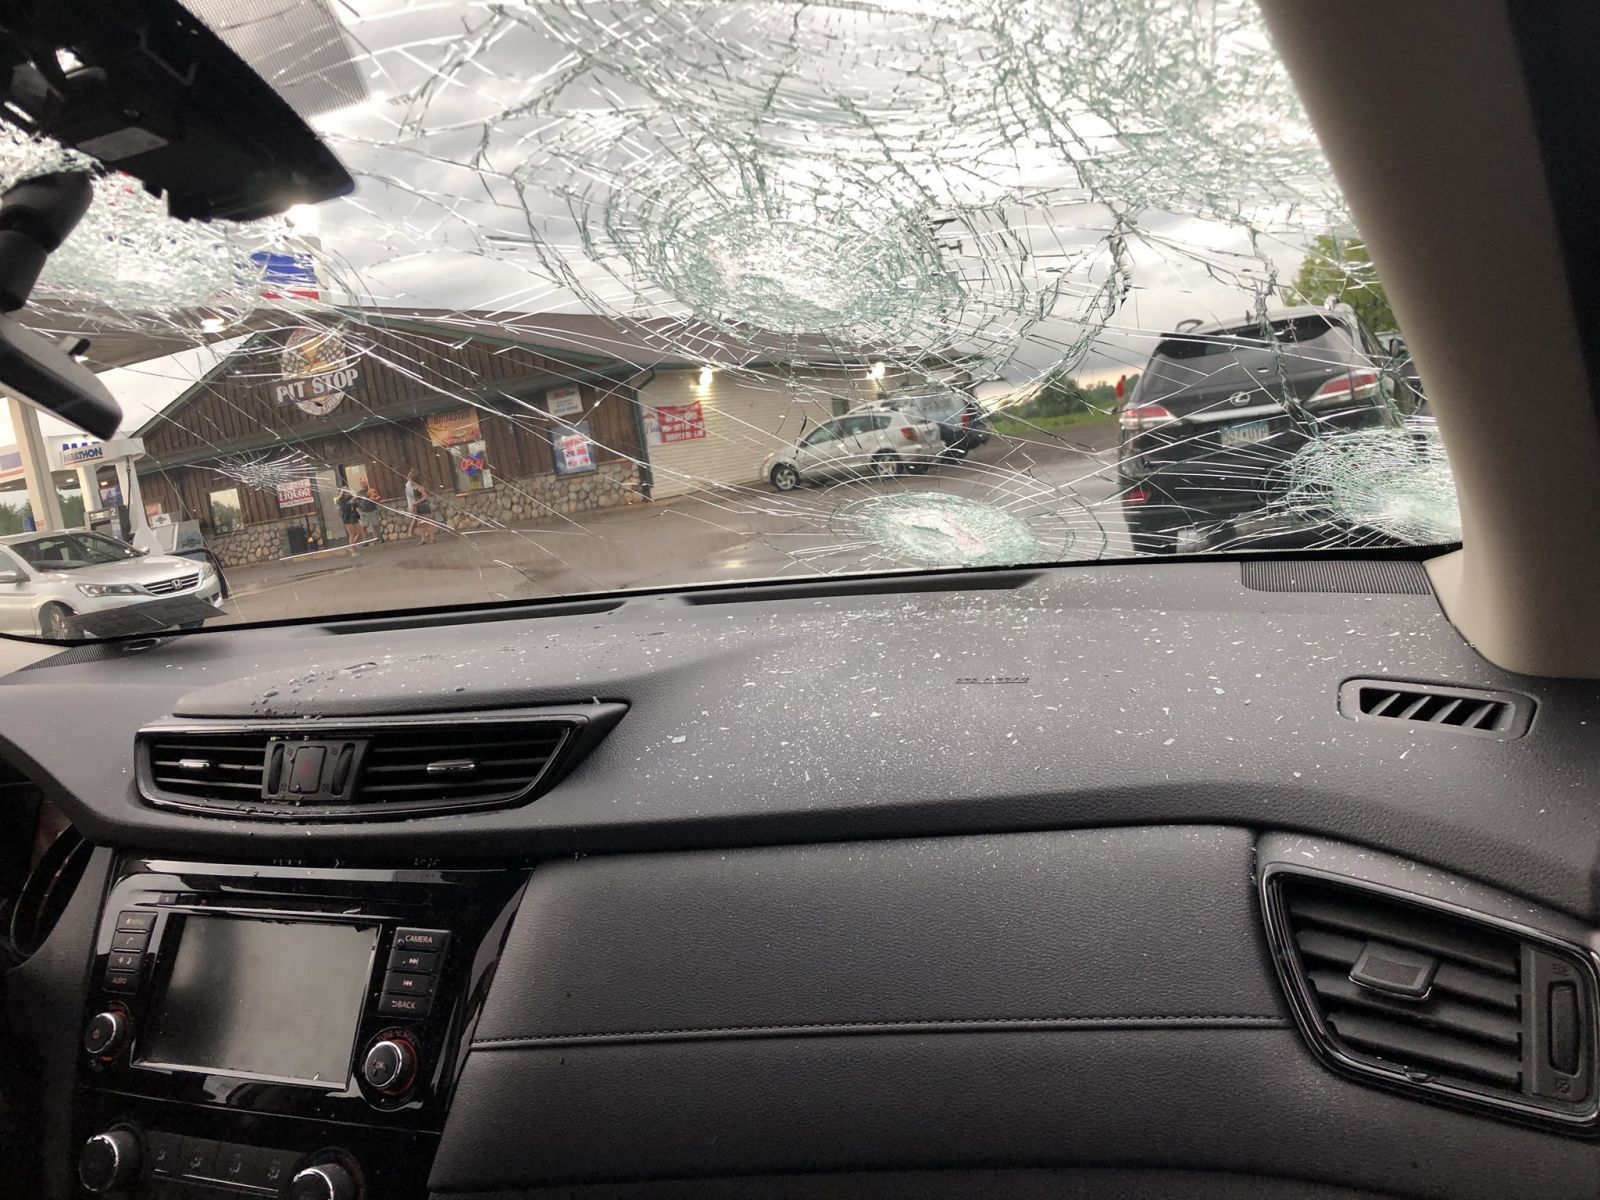 Огромный град повредил автомобили. Фото: Meteorologist Jenna Lake в Twitter